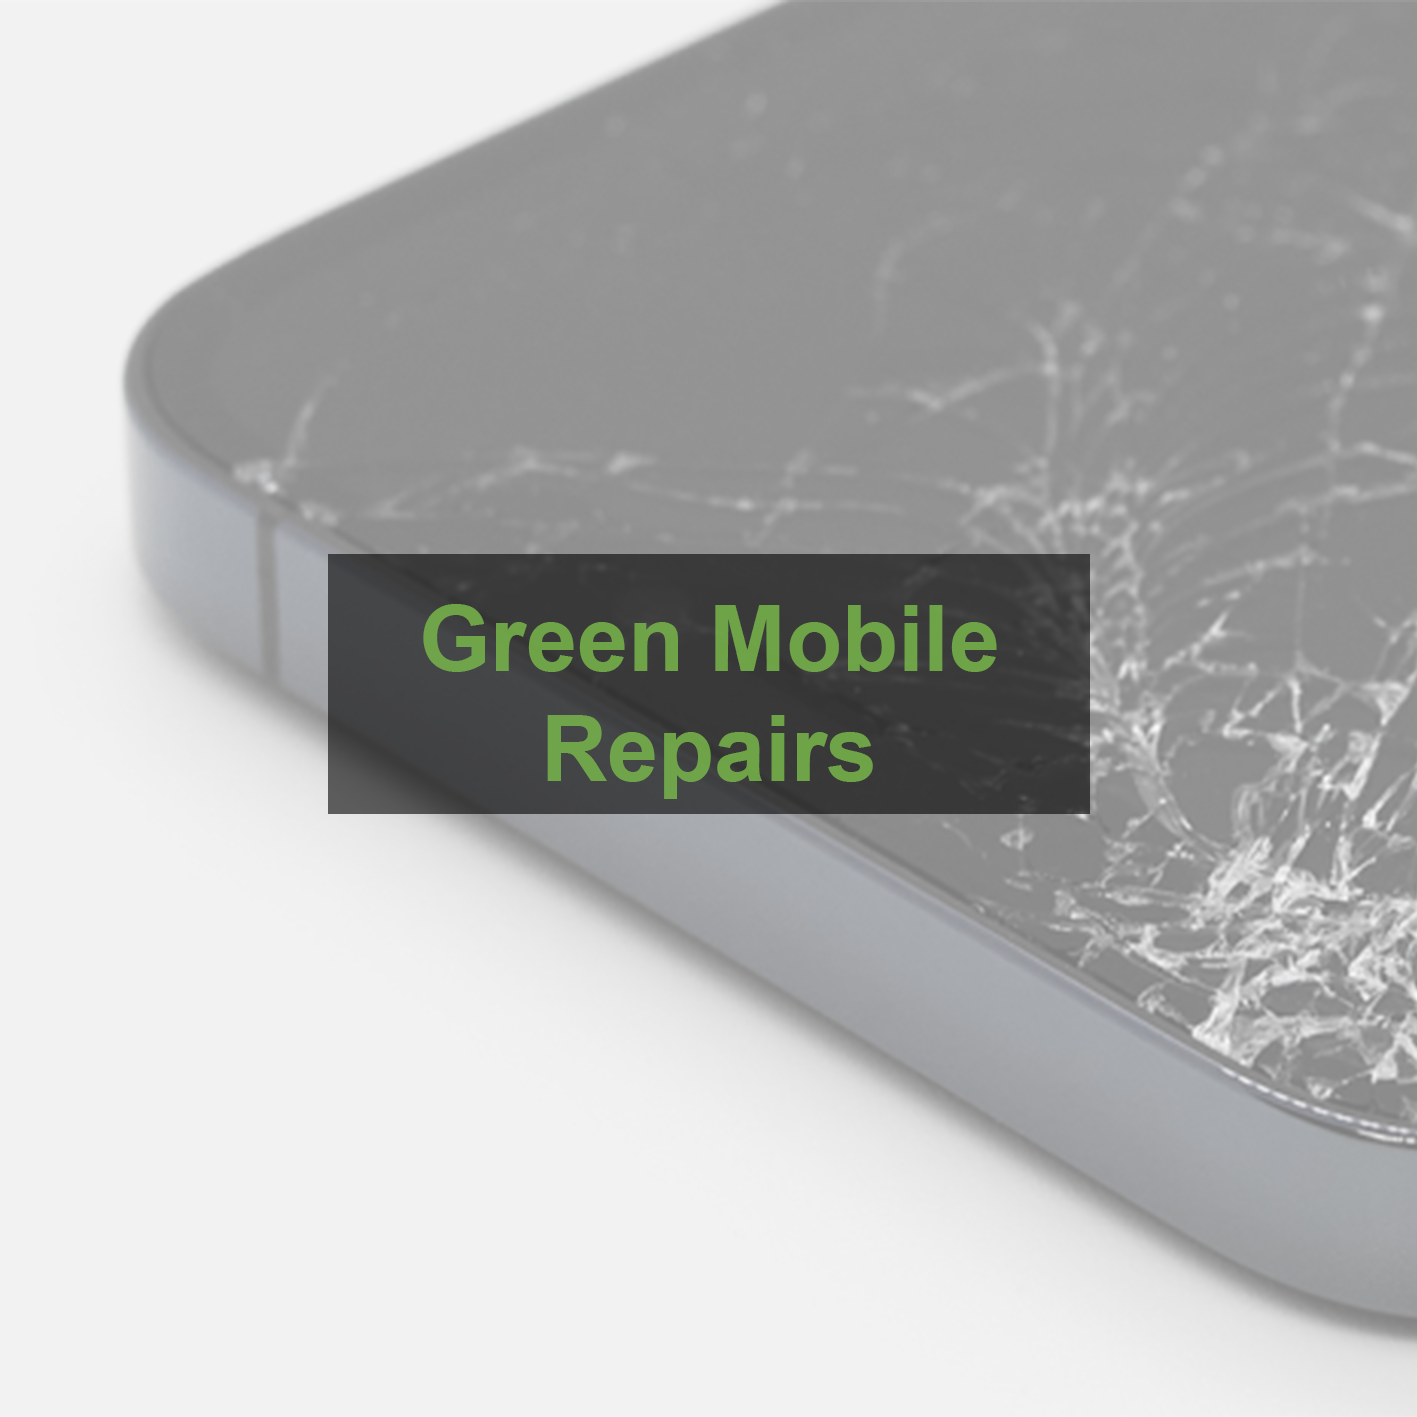 iPhone 6s Plus Repair Service - GREEN MOBILE REPAIRS